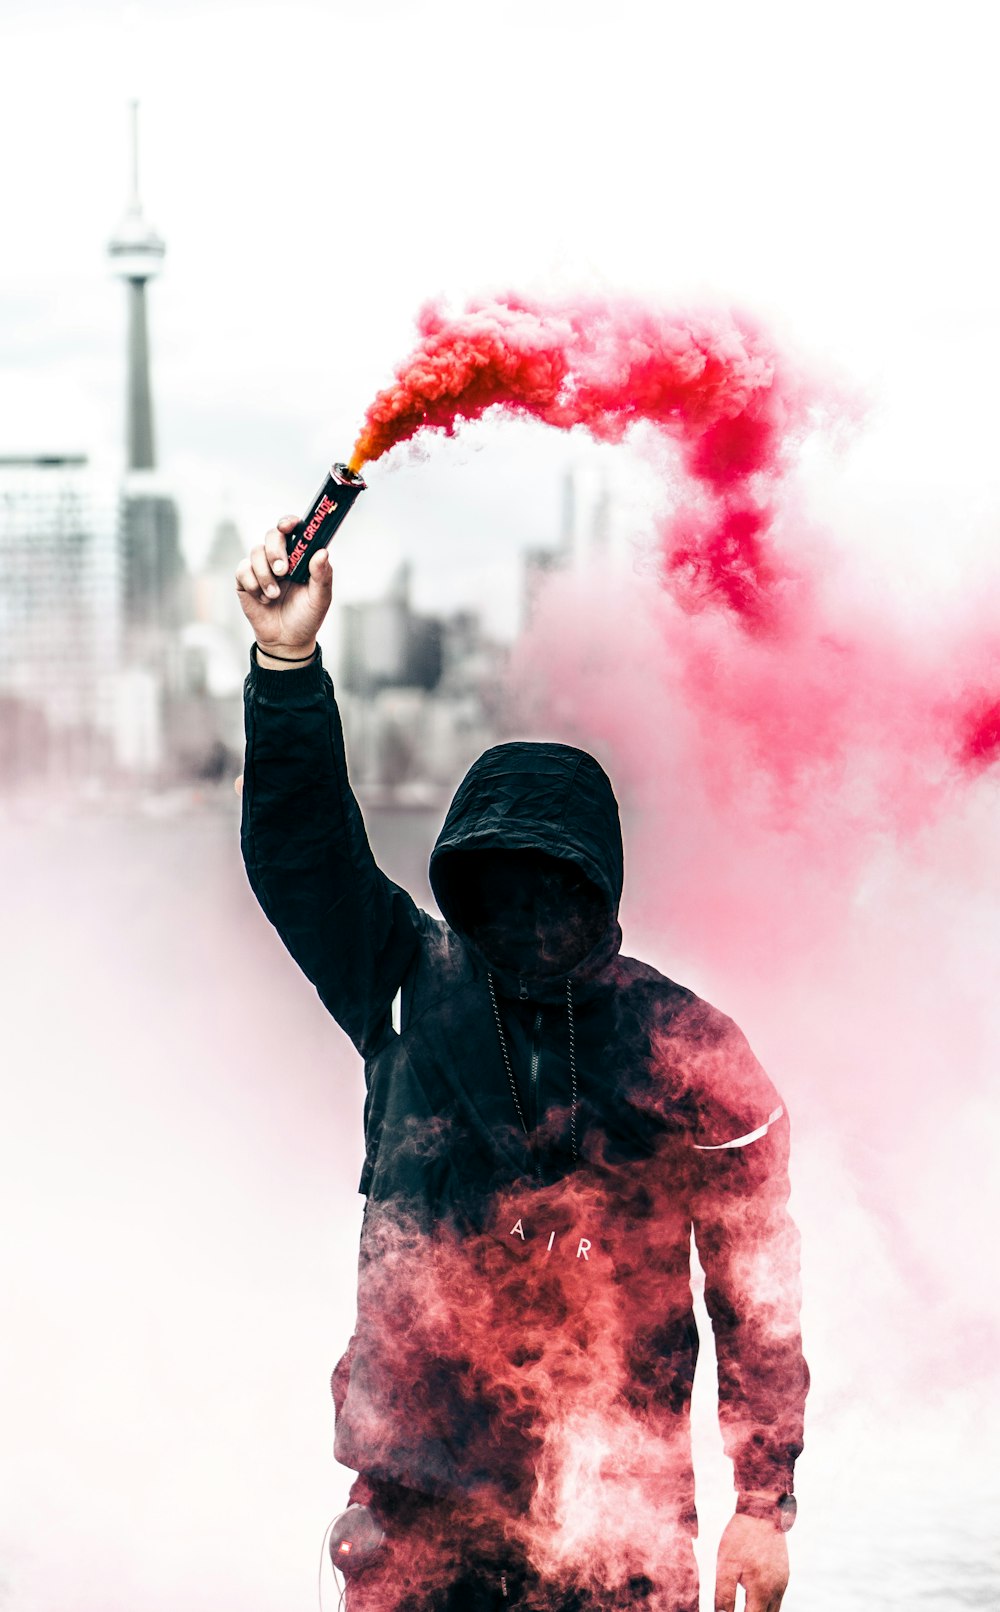 Persona con sudadera con capucha negra y roja sosteniendo una bomba de humo